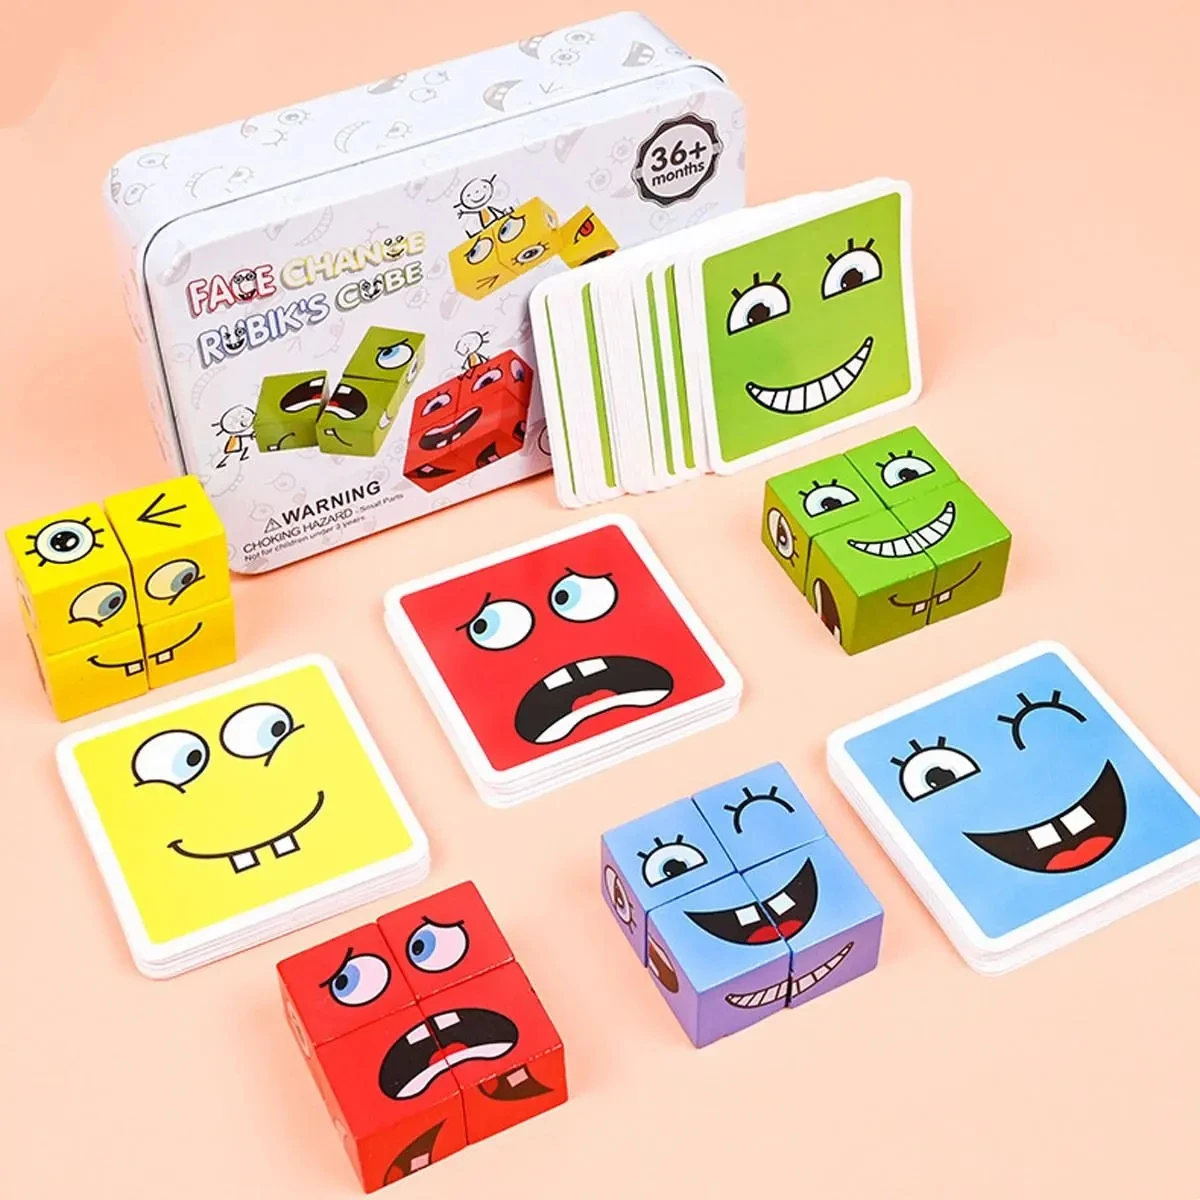 Игра для выражения эмоций детей Деревянный кубик Доска для смены лица мультяшная игрушка-головоломка Montessori Thinking Challenge Games